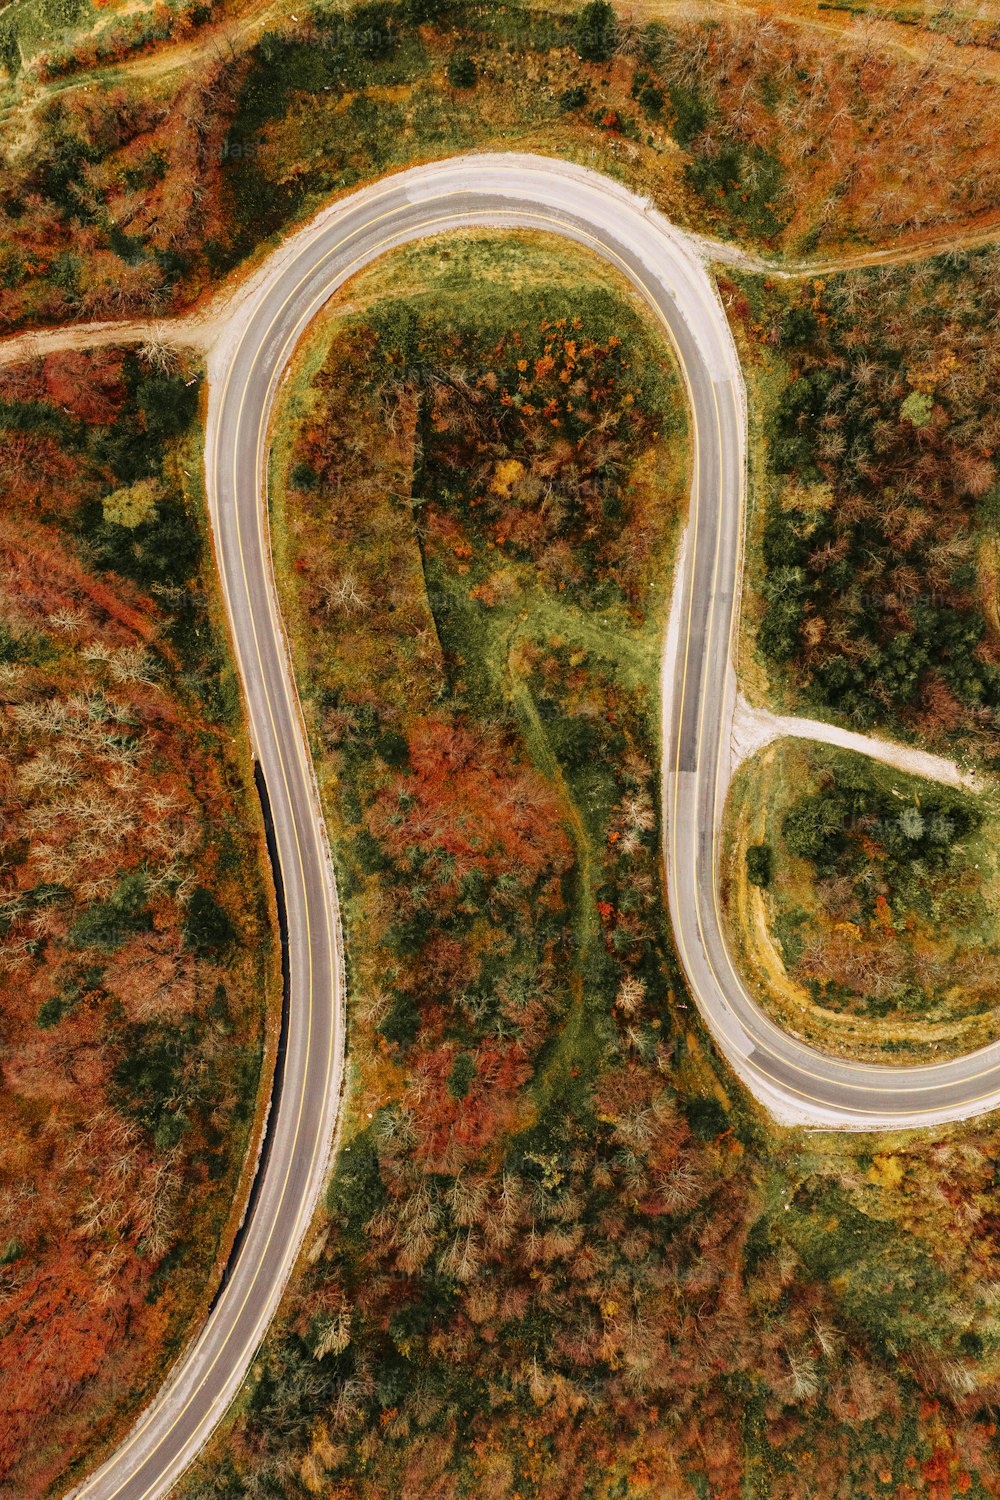 Vue aérienne d’une route sinueuse entourée d’arbres